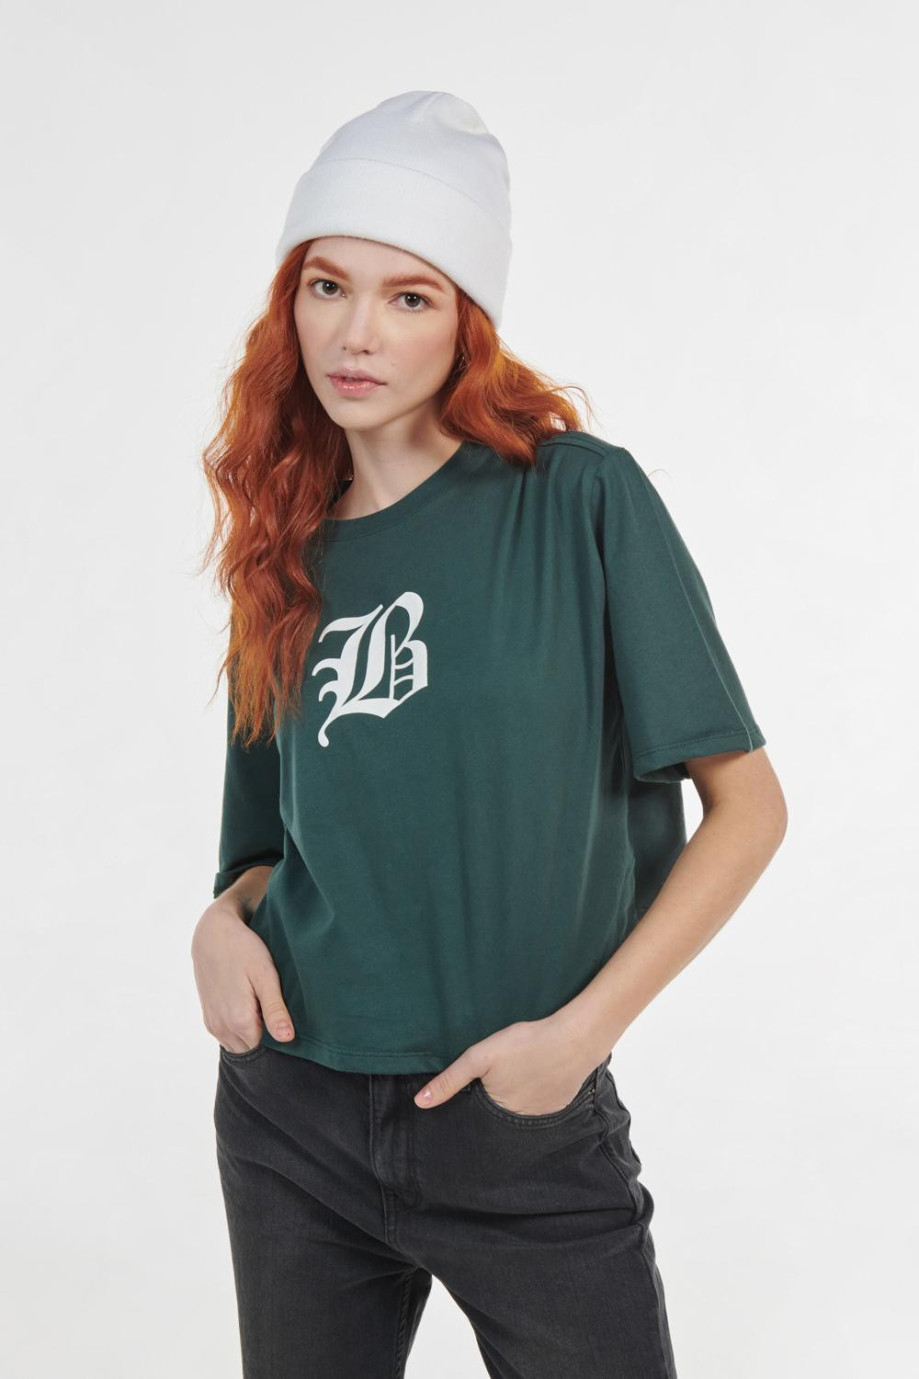 Camiseta crop top verde oscura con diseño college blanco en frente